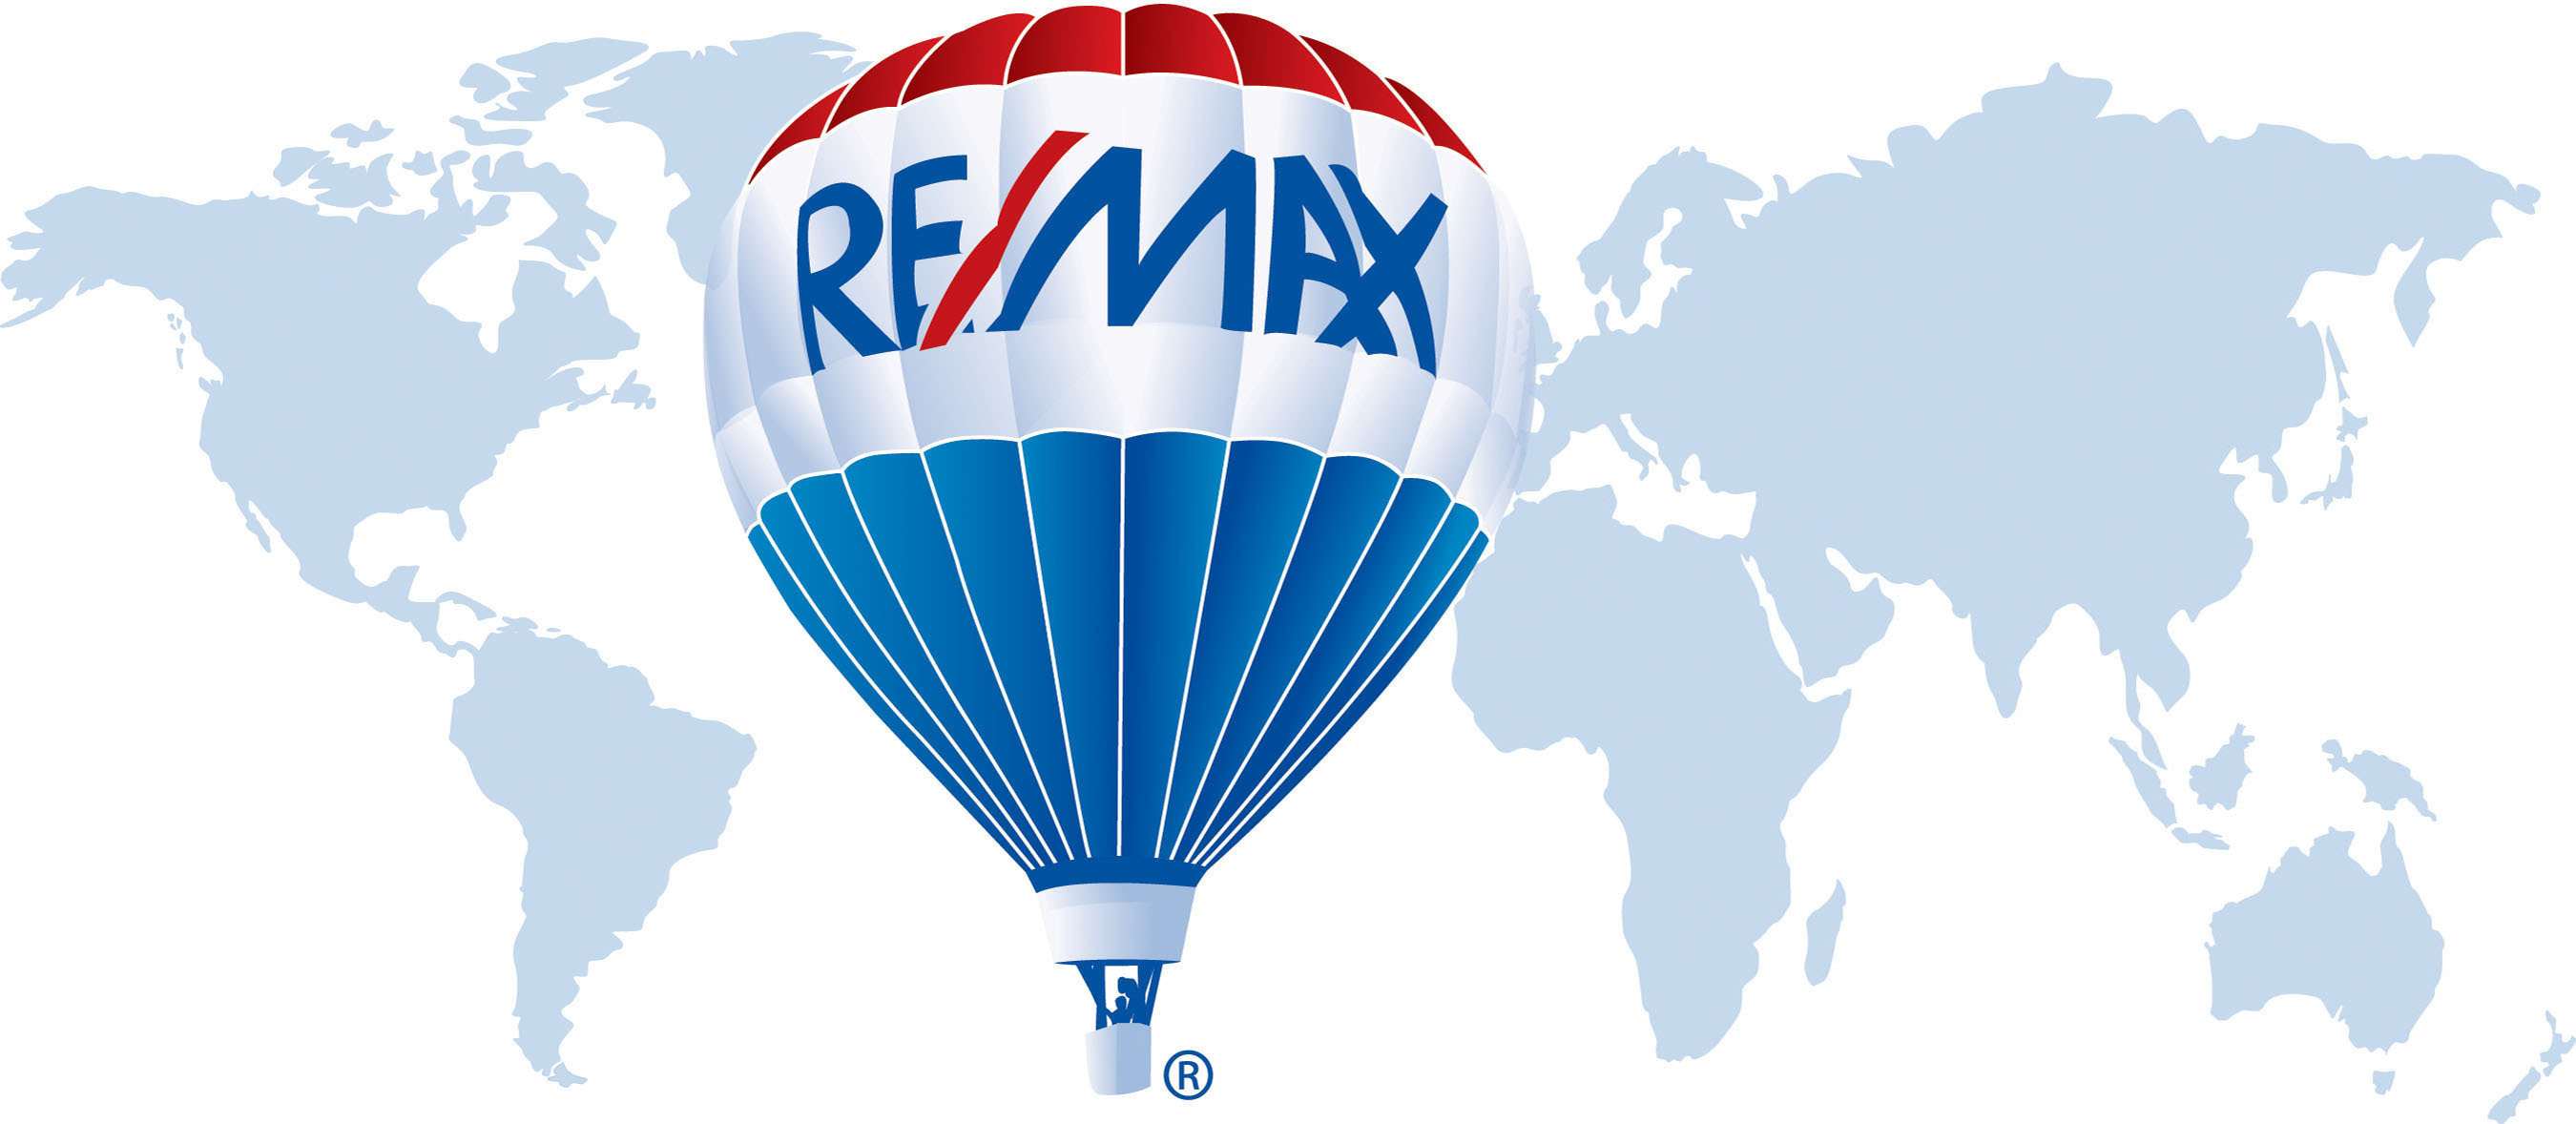 RE/MAX, LLC Logo. (PRNewsFoto/RE/MAX International, Inc.) (PRNewsFoto/RE/MAX INTERNATIONAL, INC.)